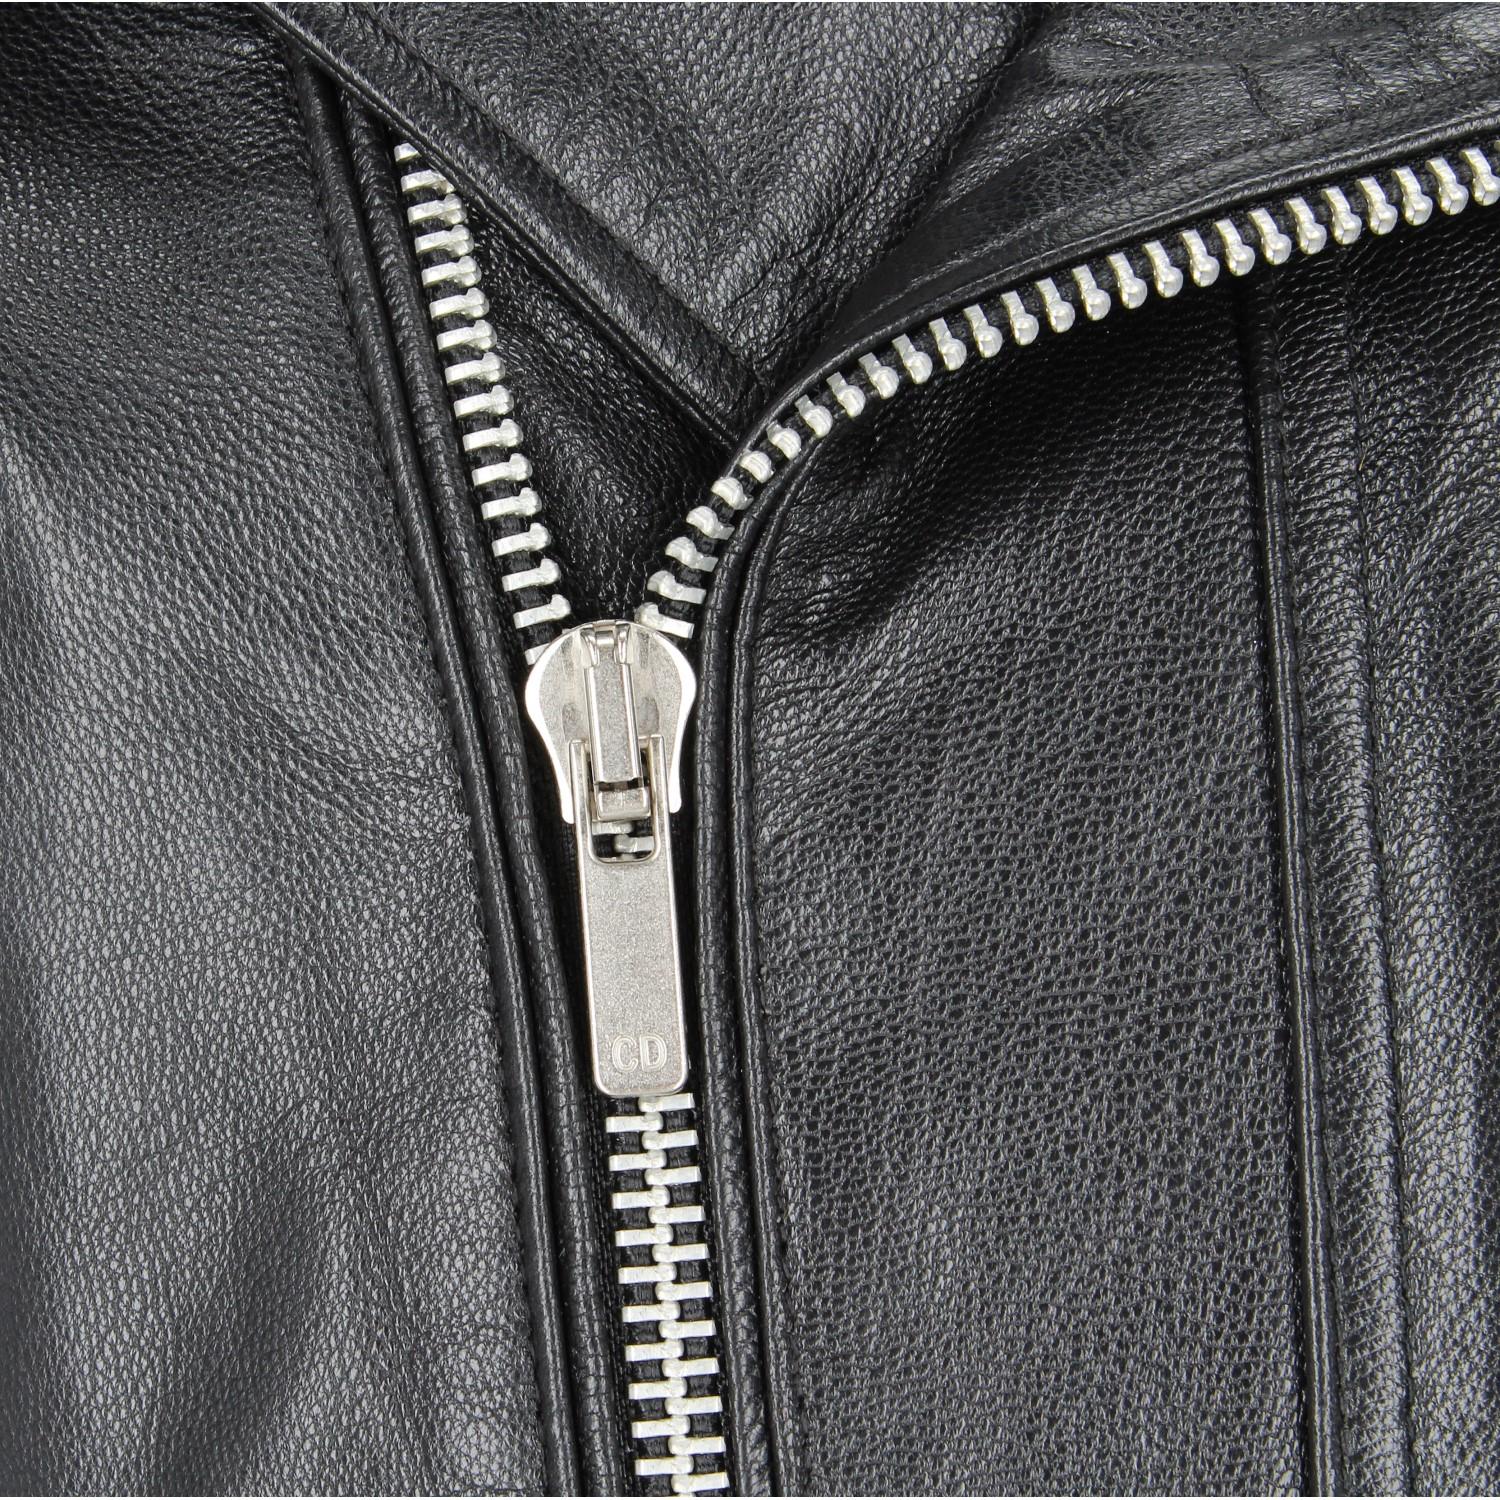 2010s Christian Dior Black Leather Biker Jacket 2